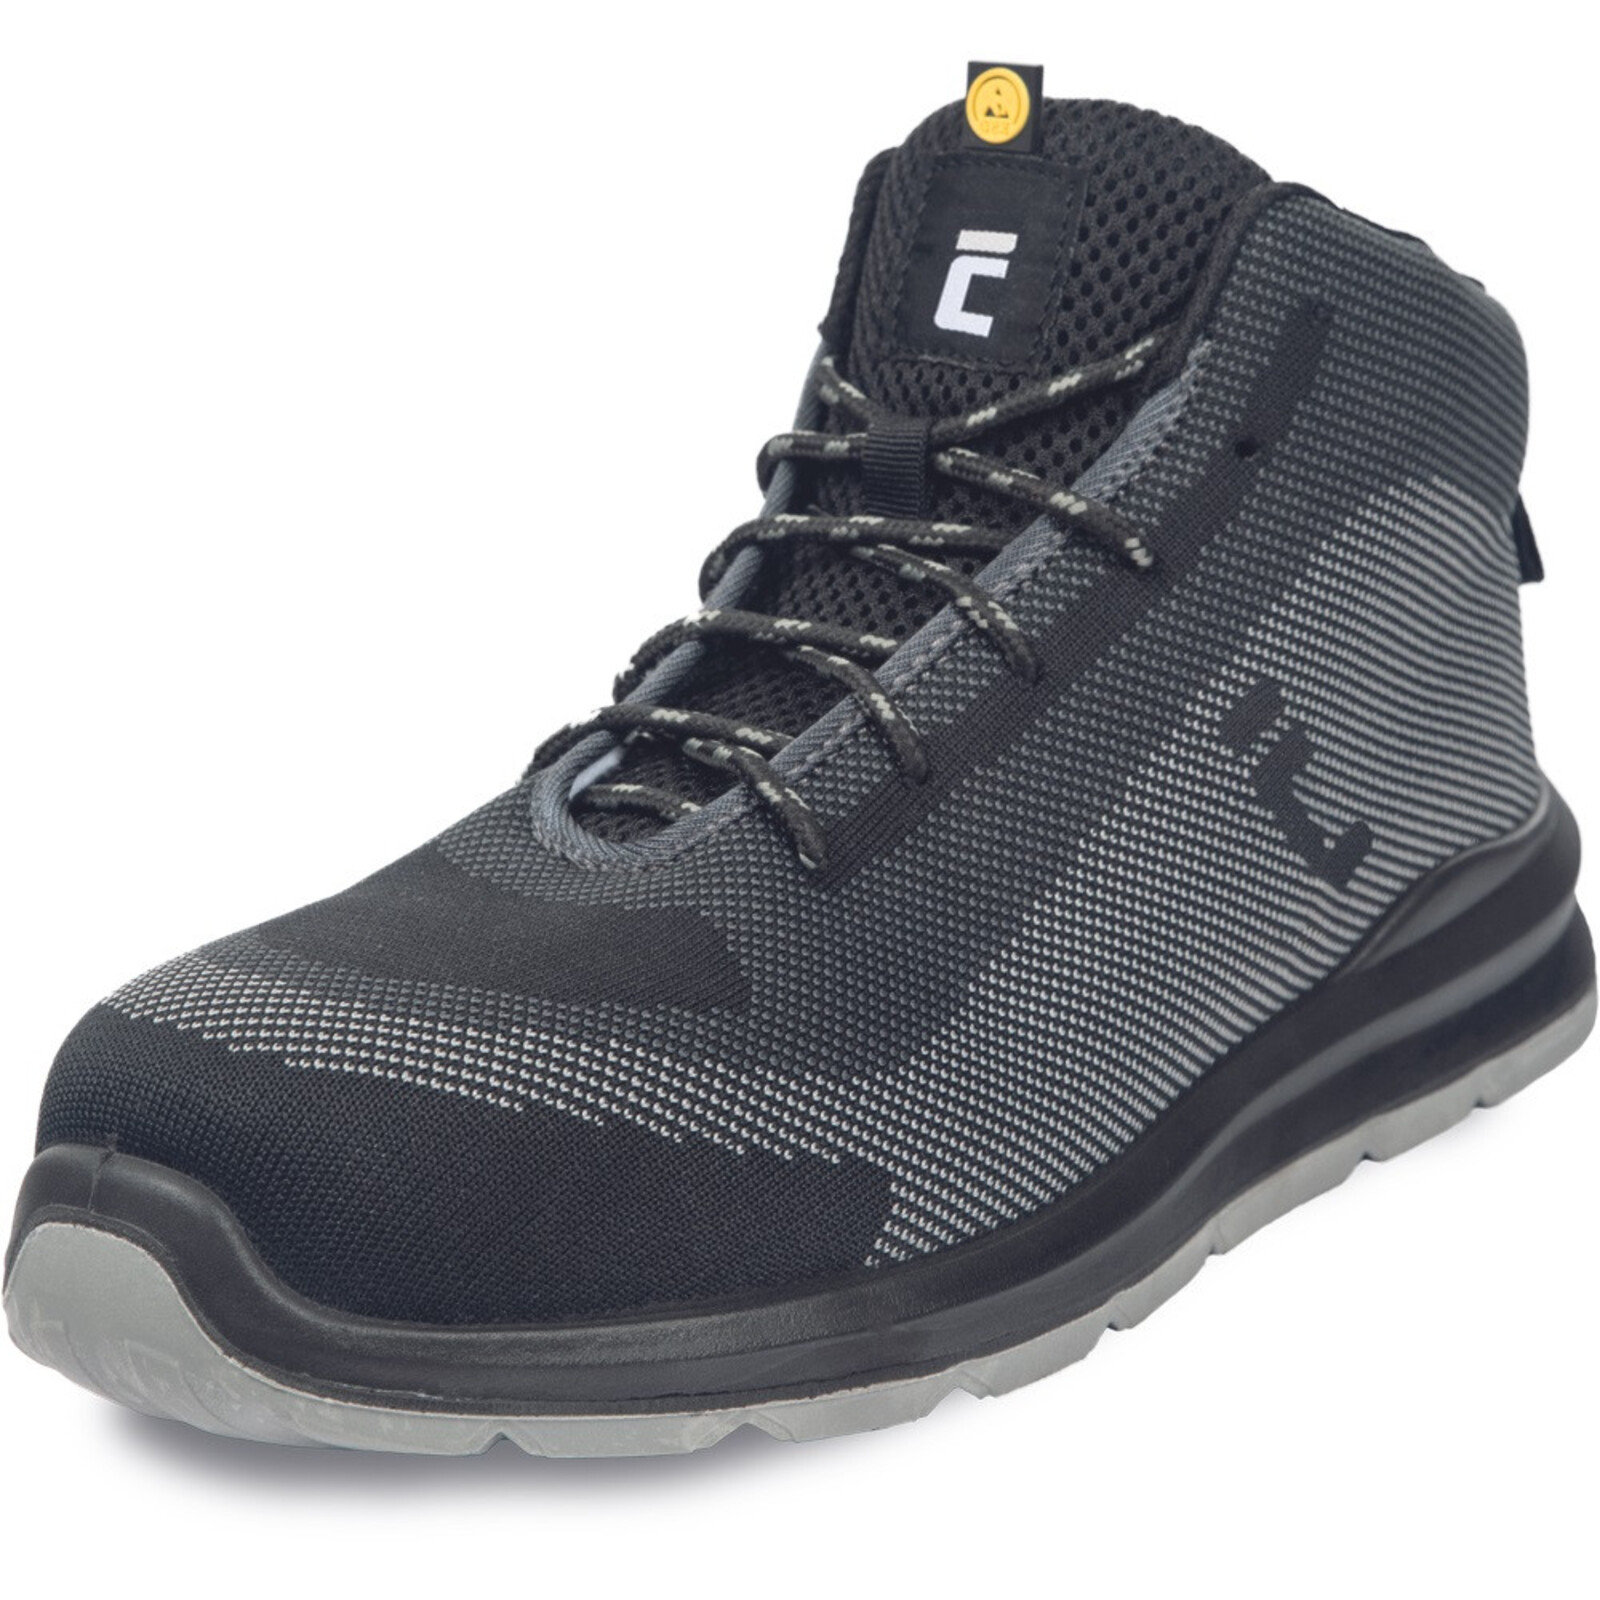 Bezpečnostná členková obuv Cerva Vadorros S1P MF ESD SRC - veľkosť: 38, farba: sivá/čierna